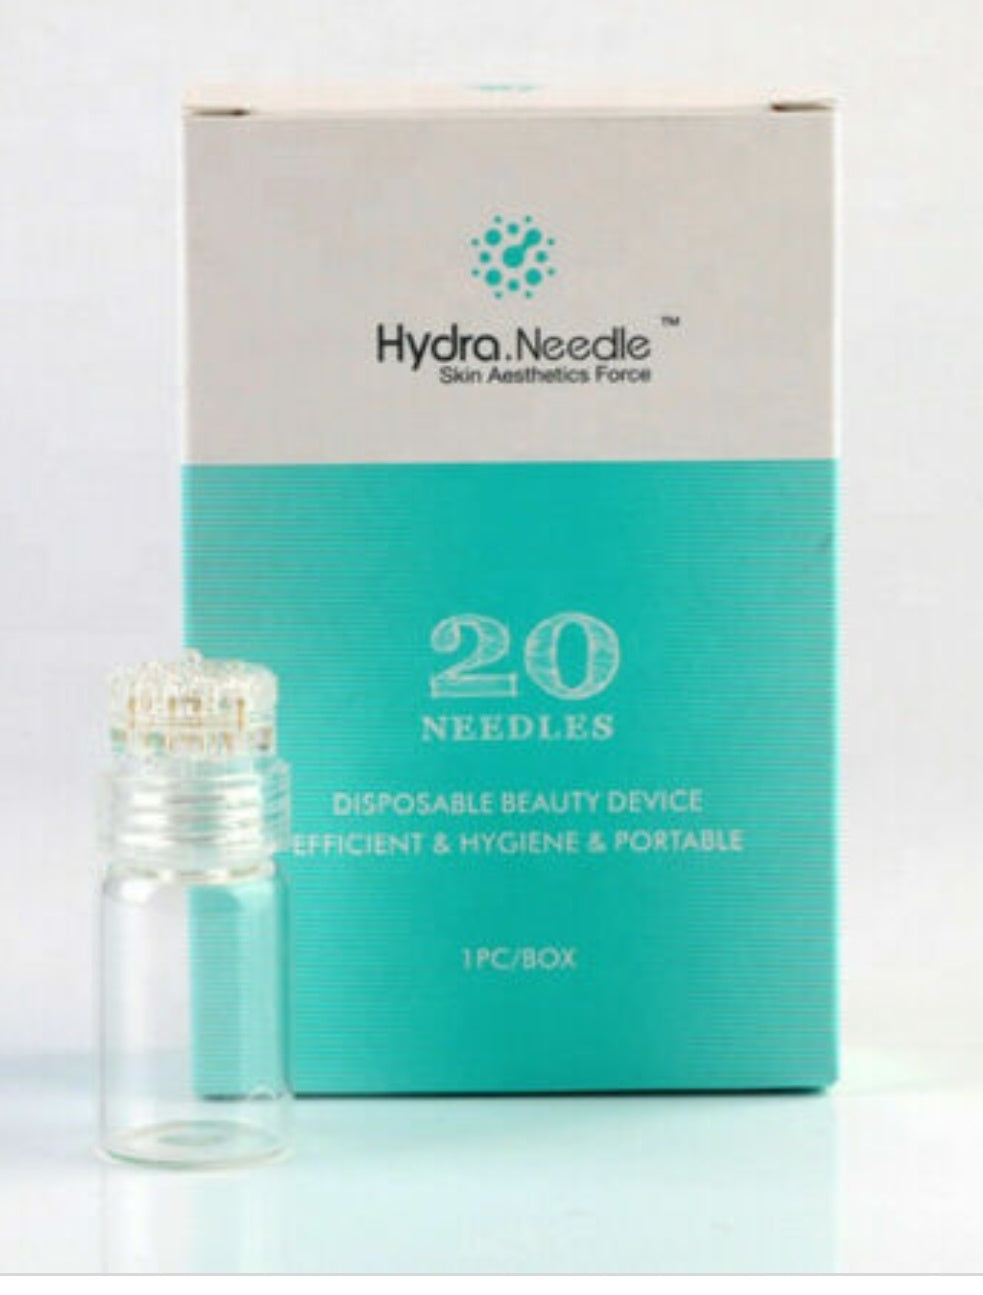 Hydro needle product shot